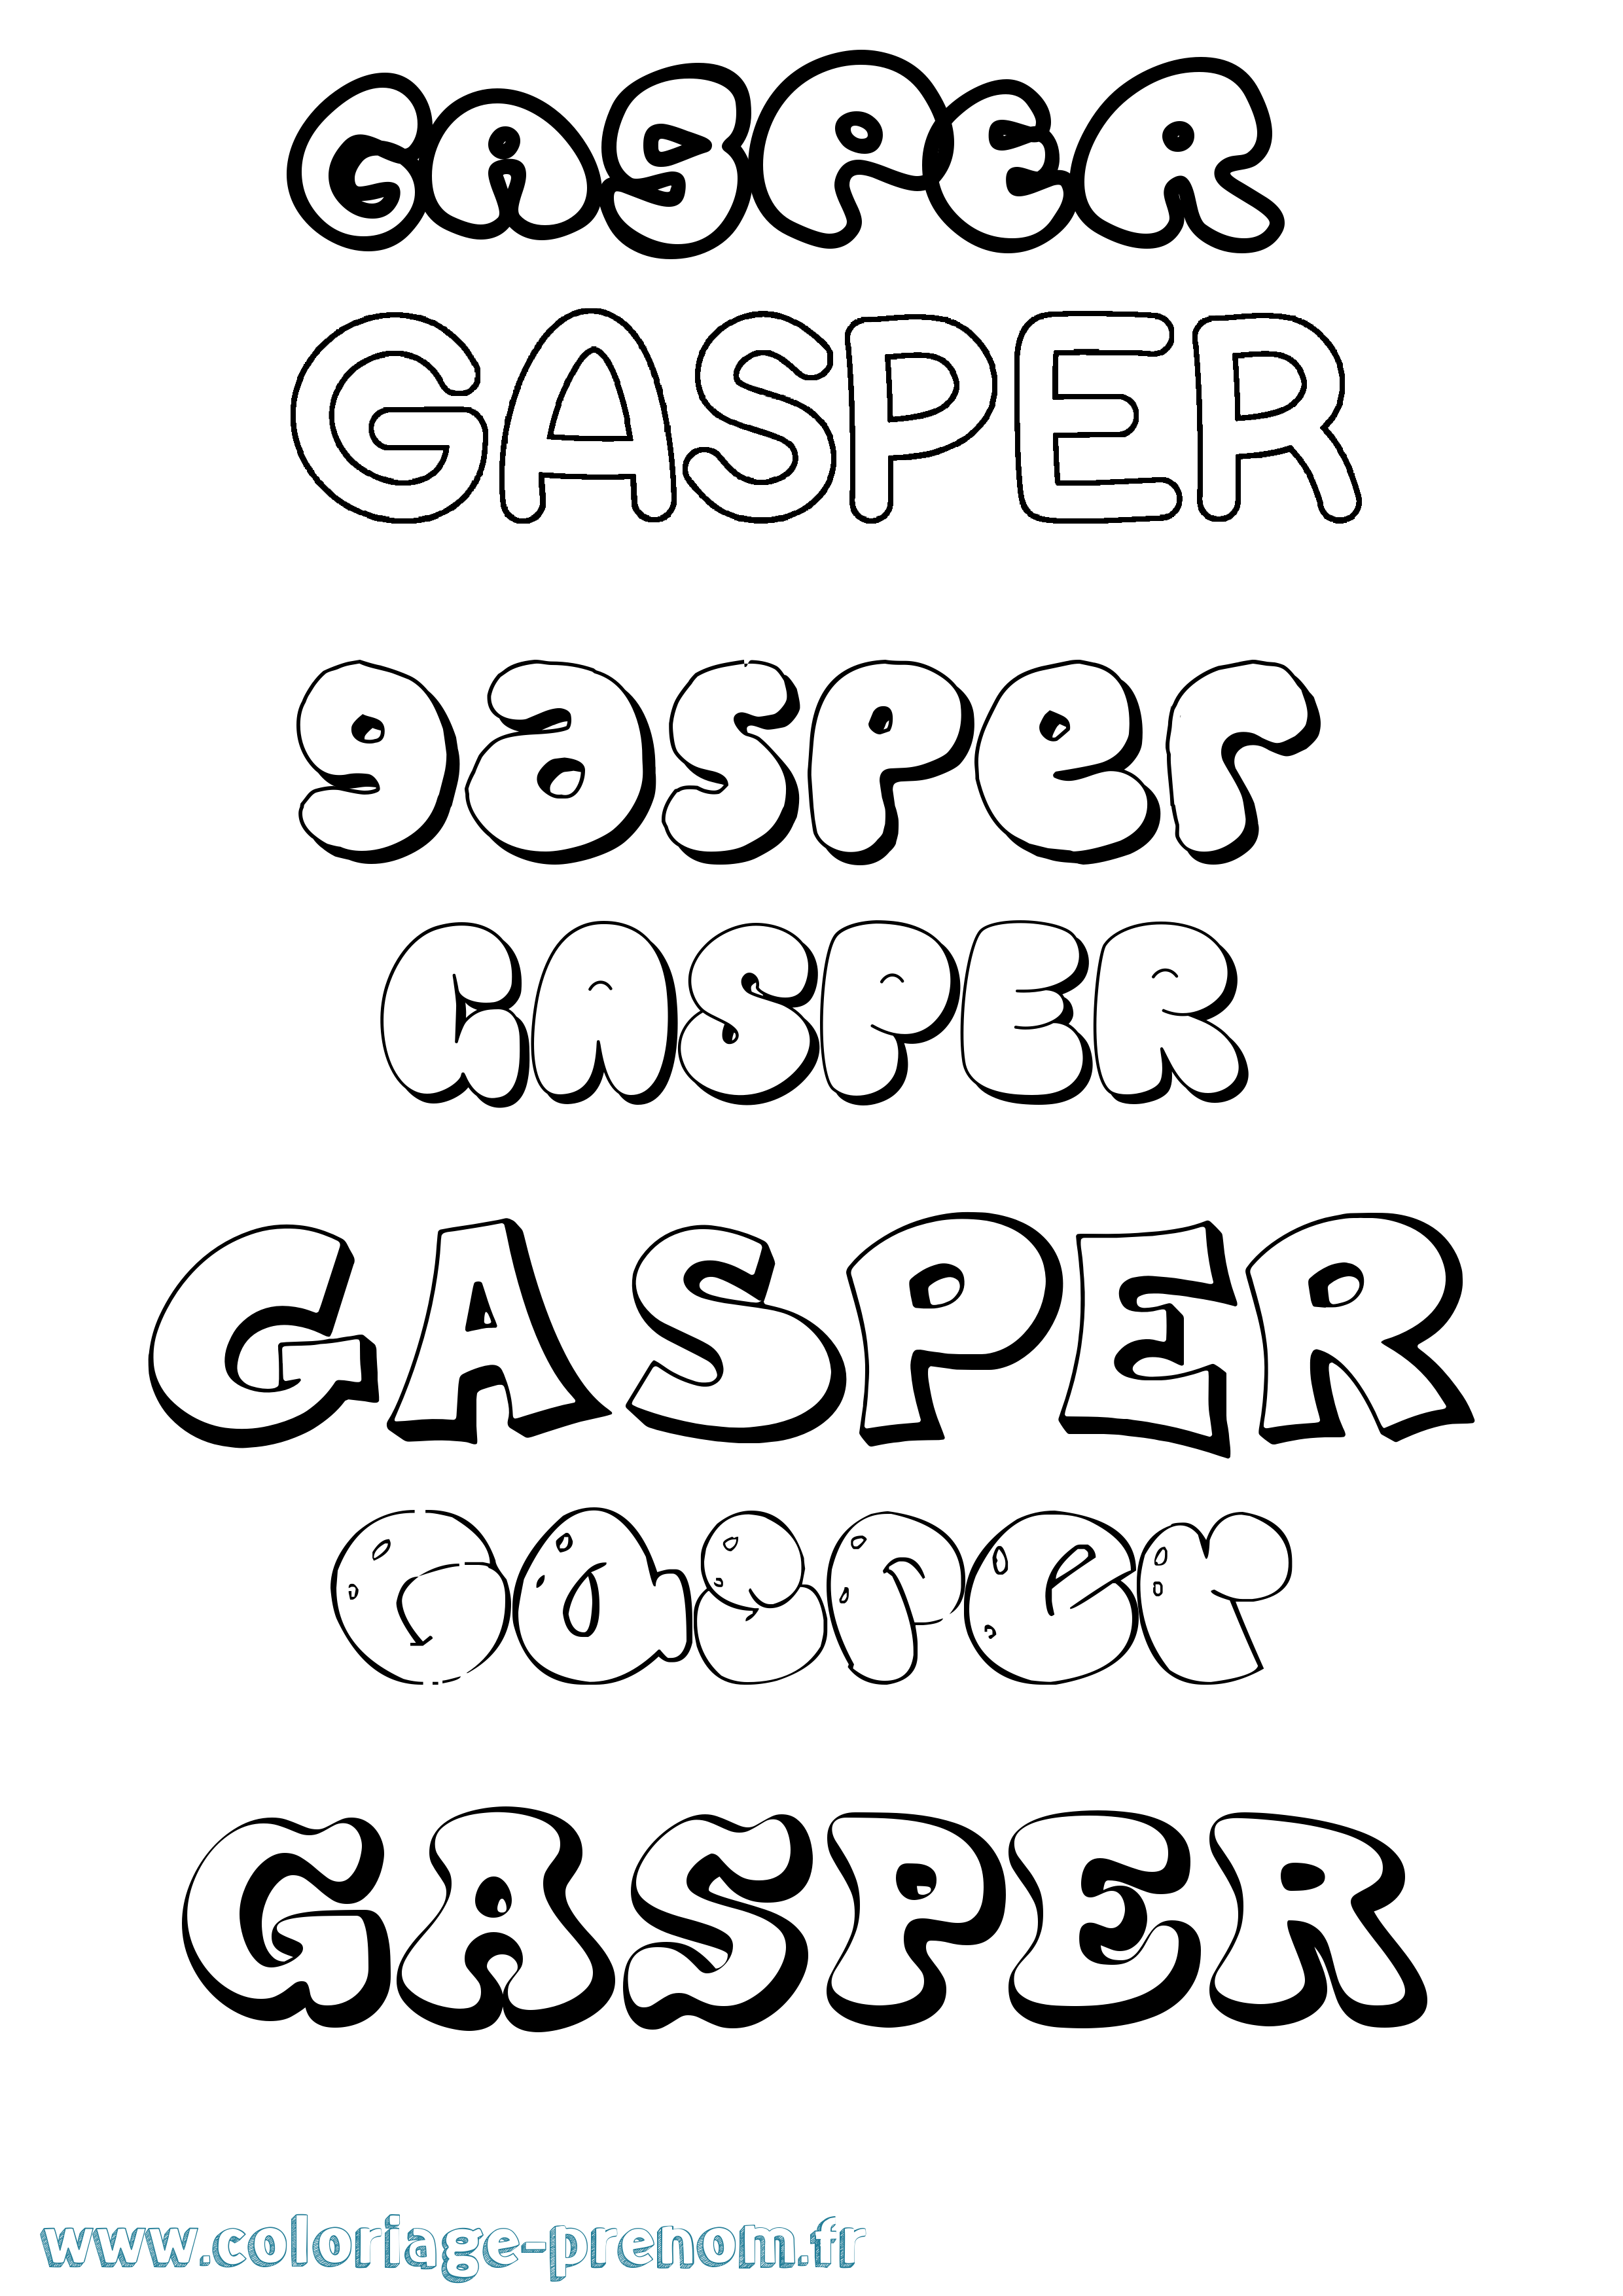 Coloriage prénom Gasper Bubble